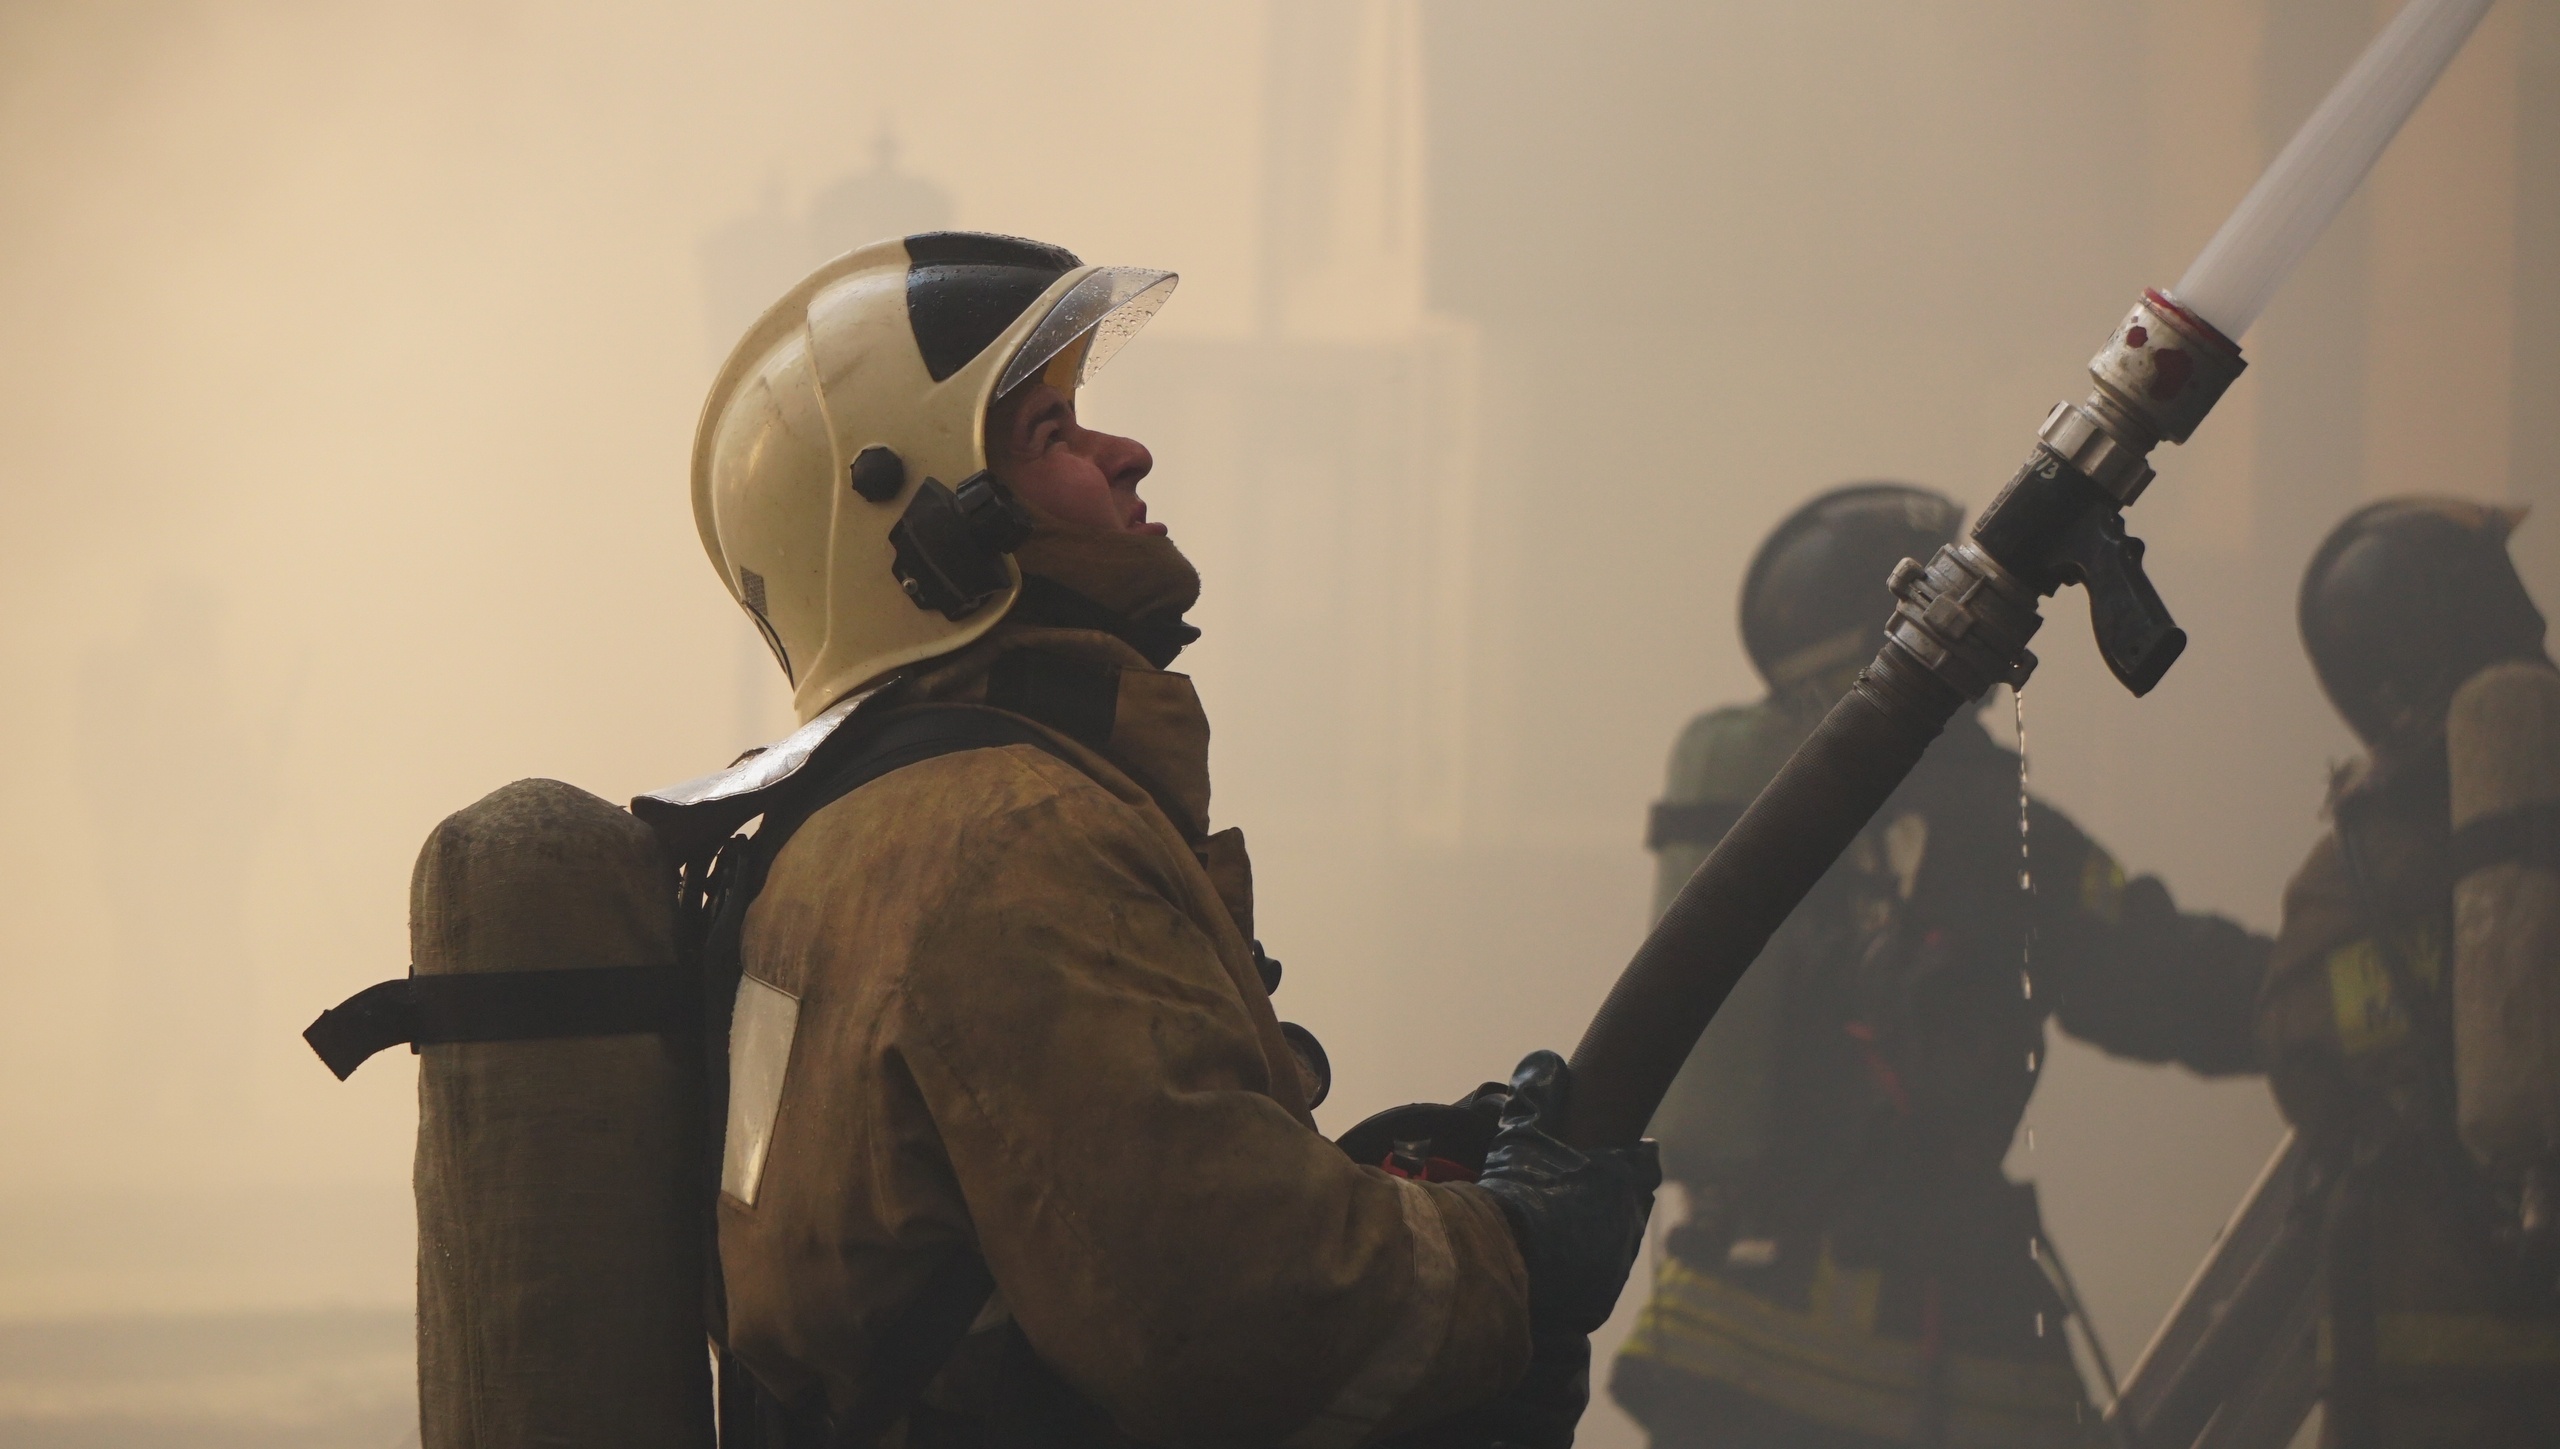 Около горящего здания было много спецмашин, пожарные рукава